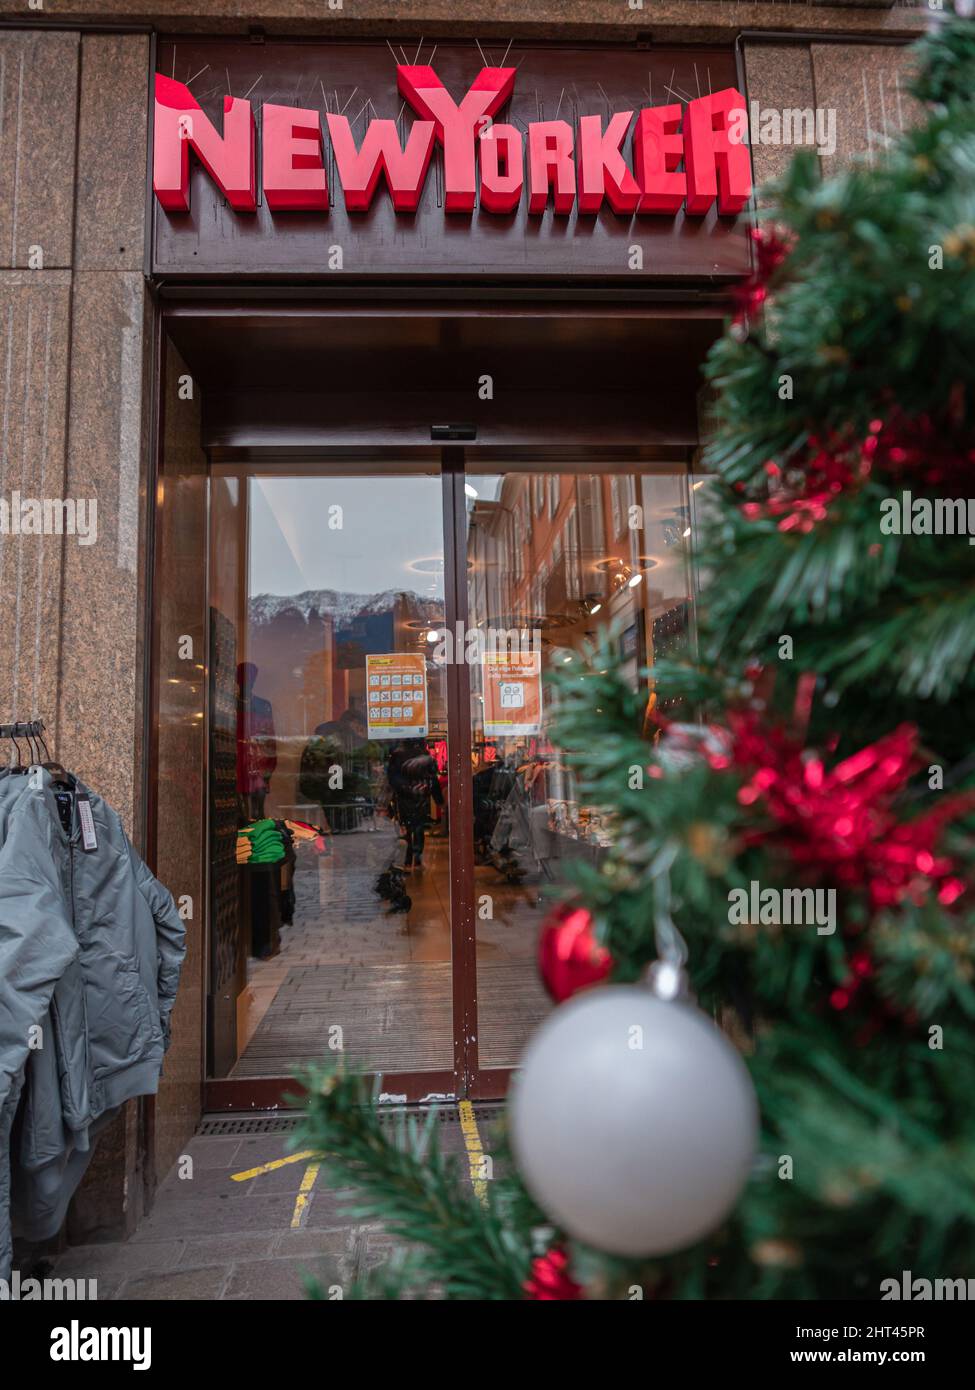 Locarno, Suisse - 29 décembre 2021: New Yorker est une entreprise de vêtements basée à Braunschweig, qui vise principalement le groupe cible de 12 t. Banque D'Images